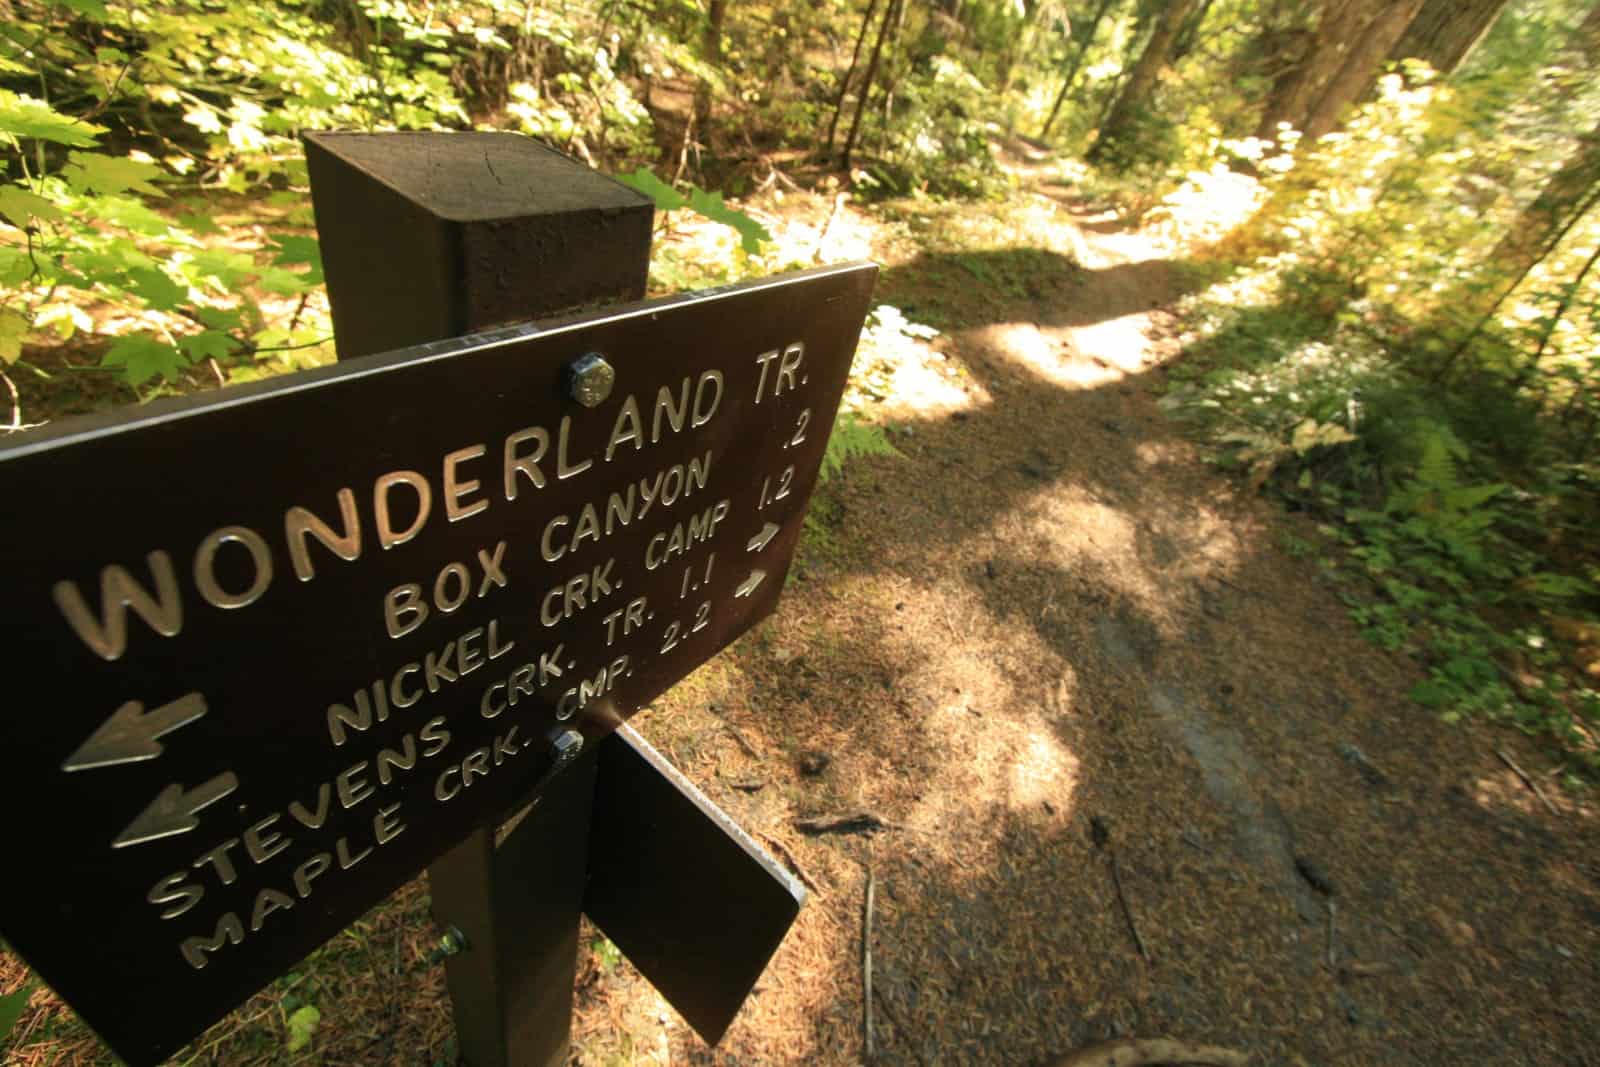 Wonderland Trail Overview